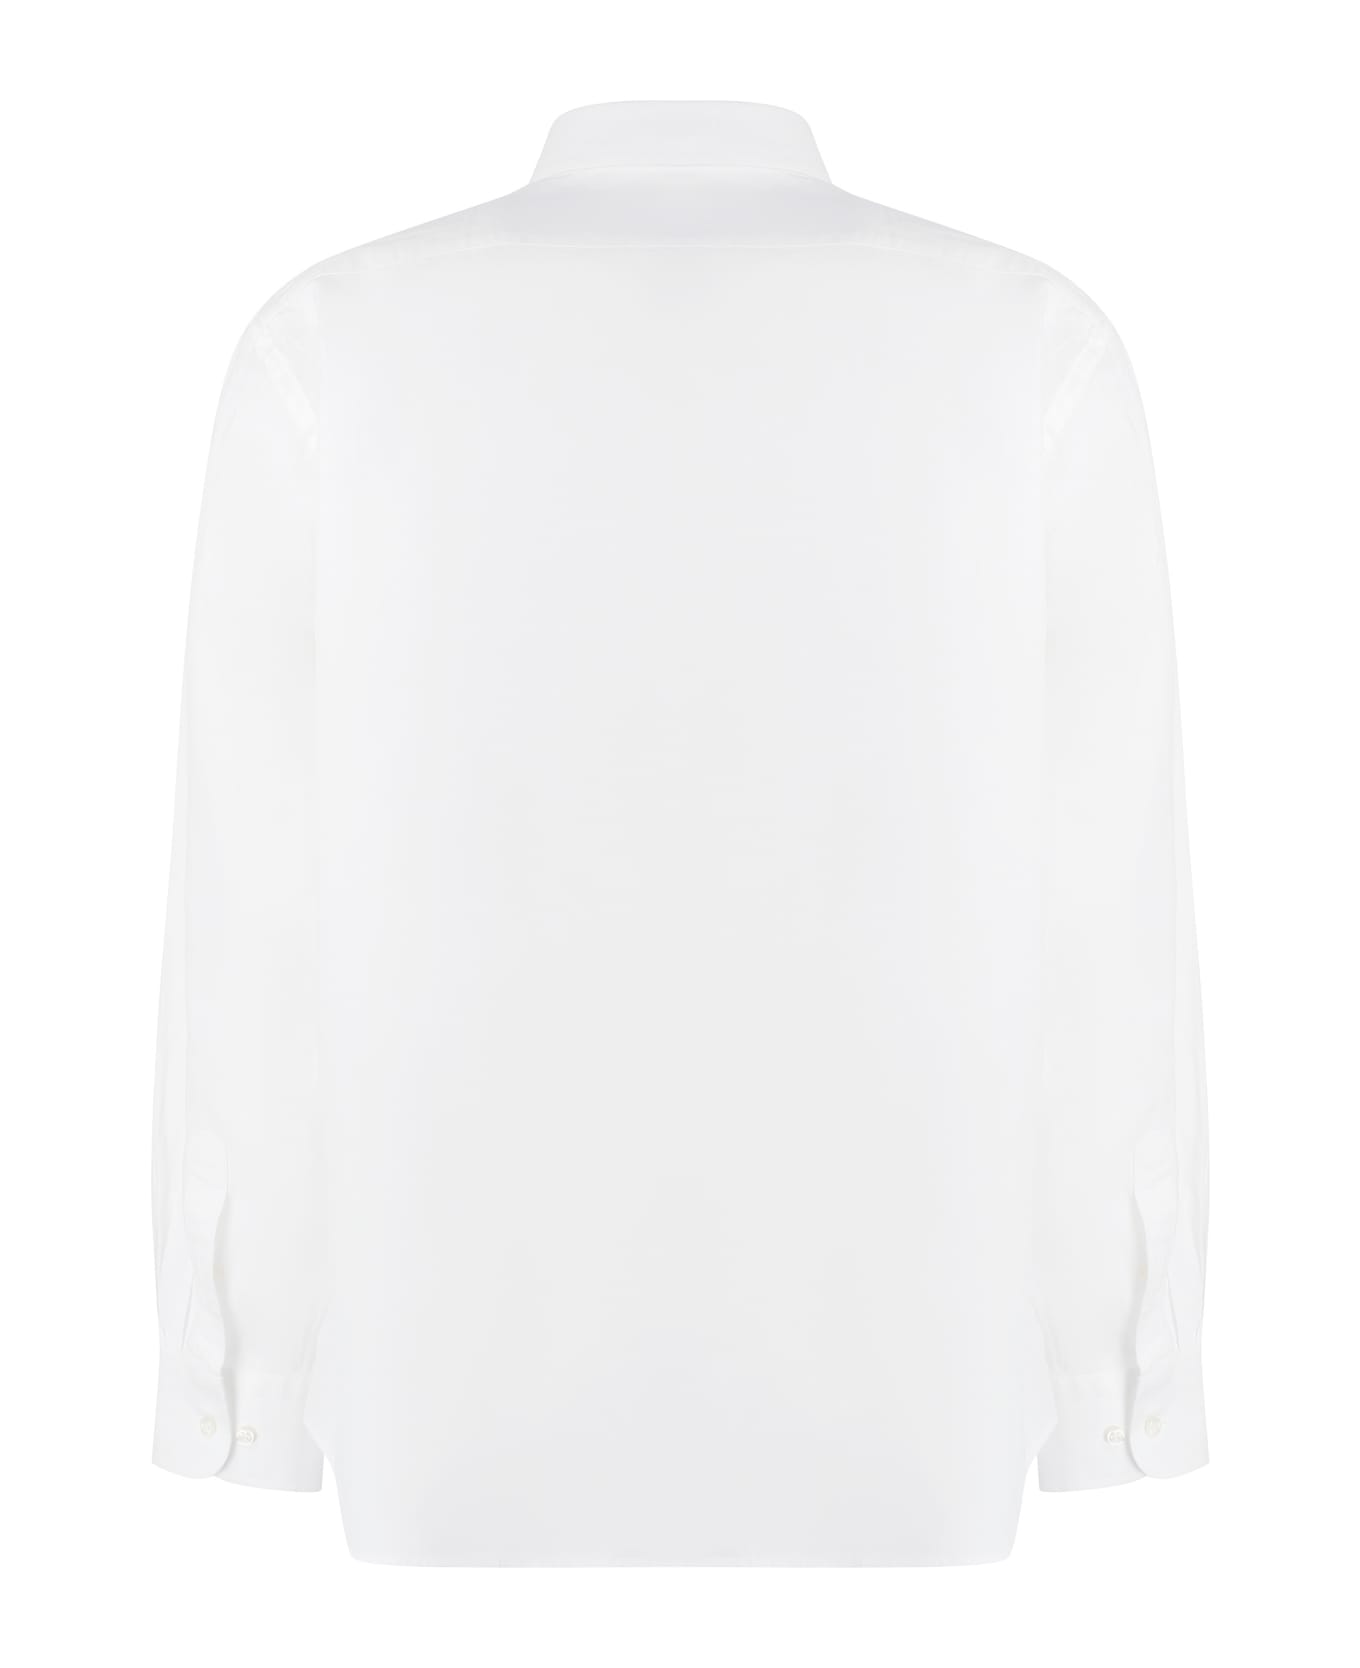 Paul&Shark Long Sleeve Cotton Blend Shirt - White